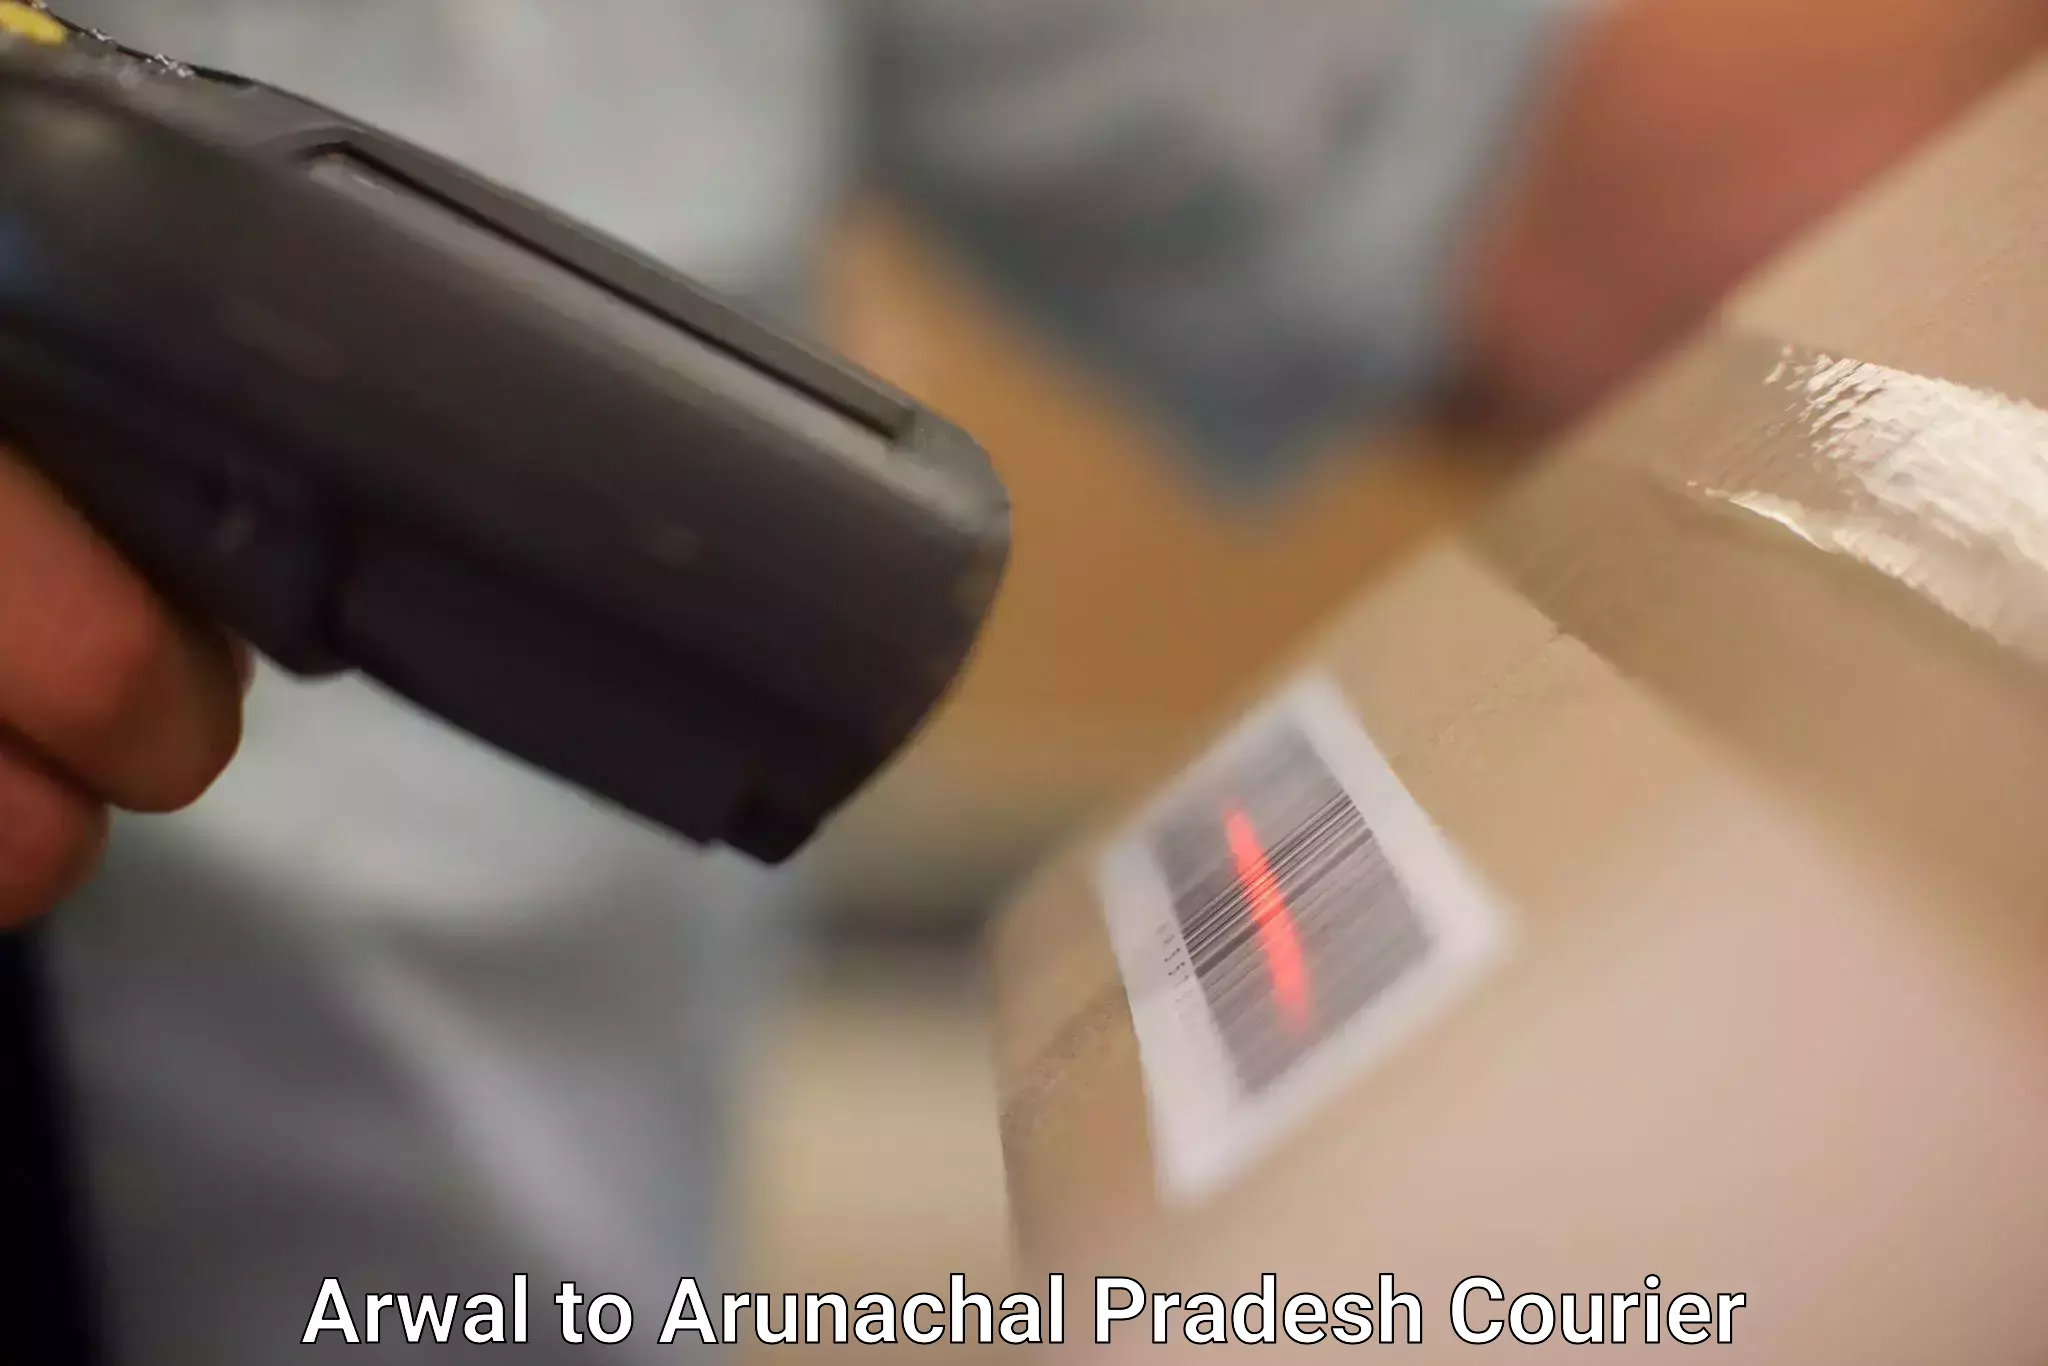 Lightweight parcel options Arwal to Arunachal Pradesh